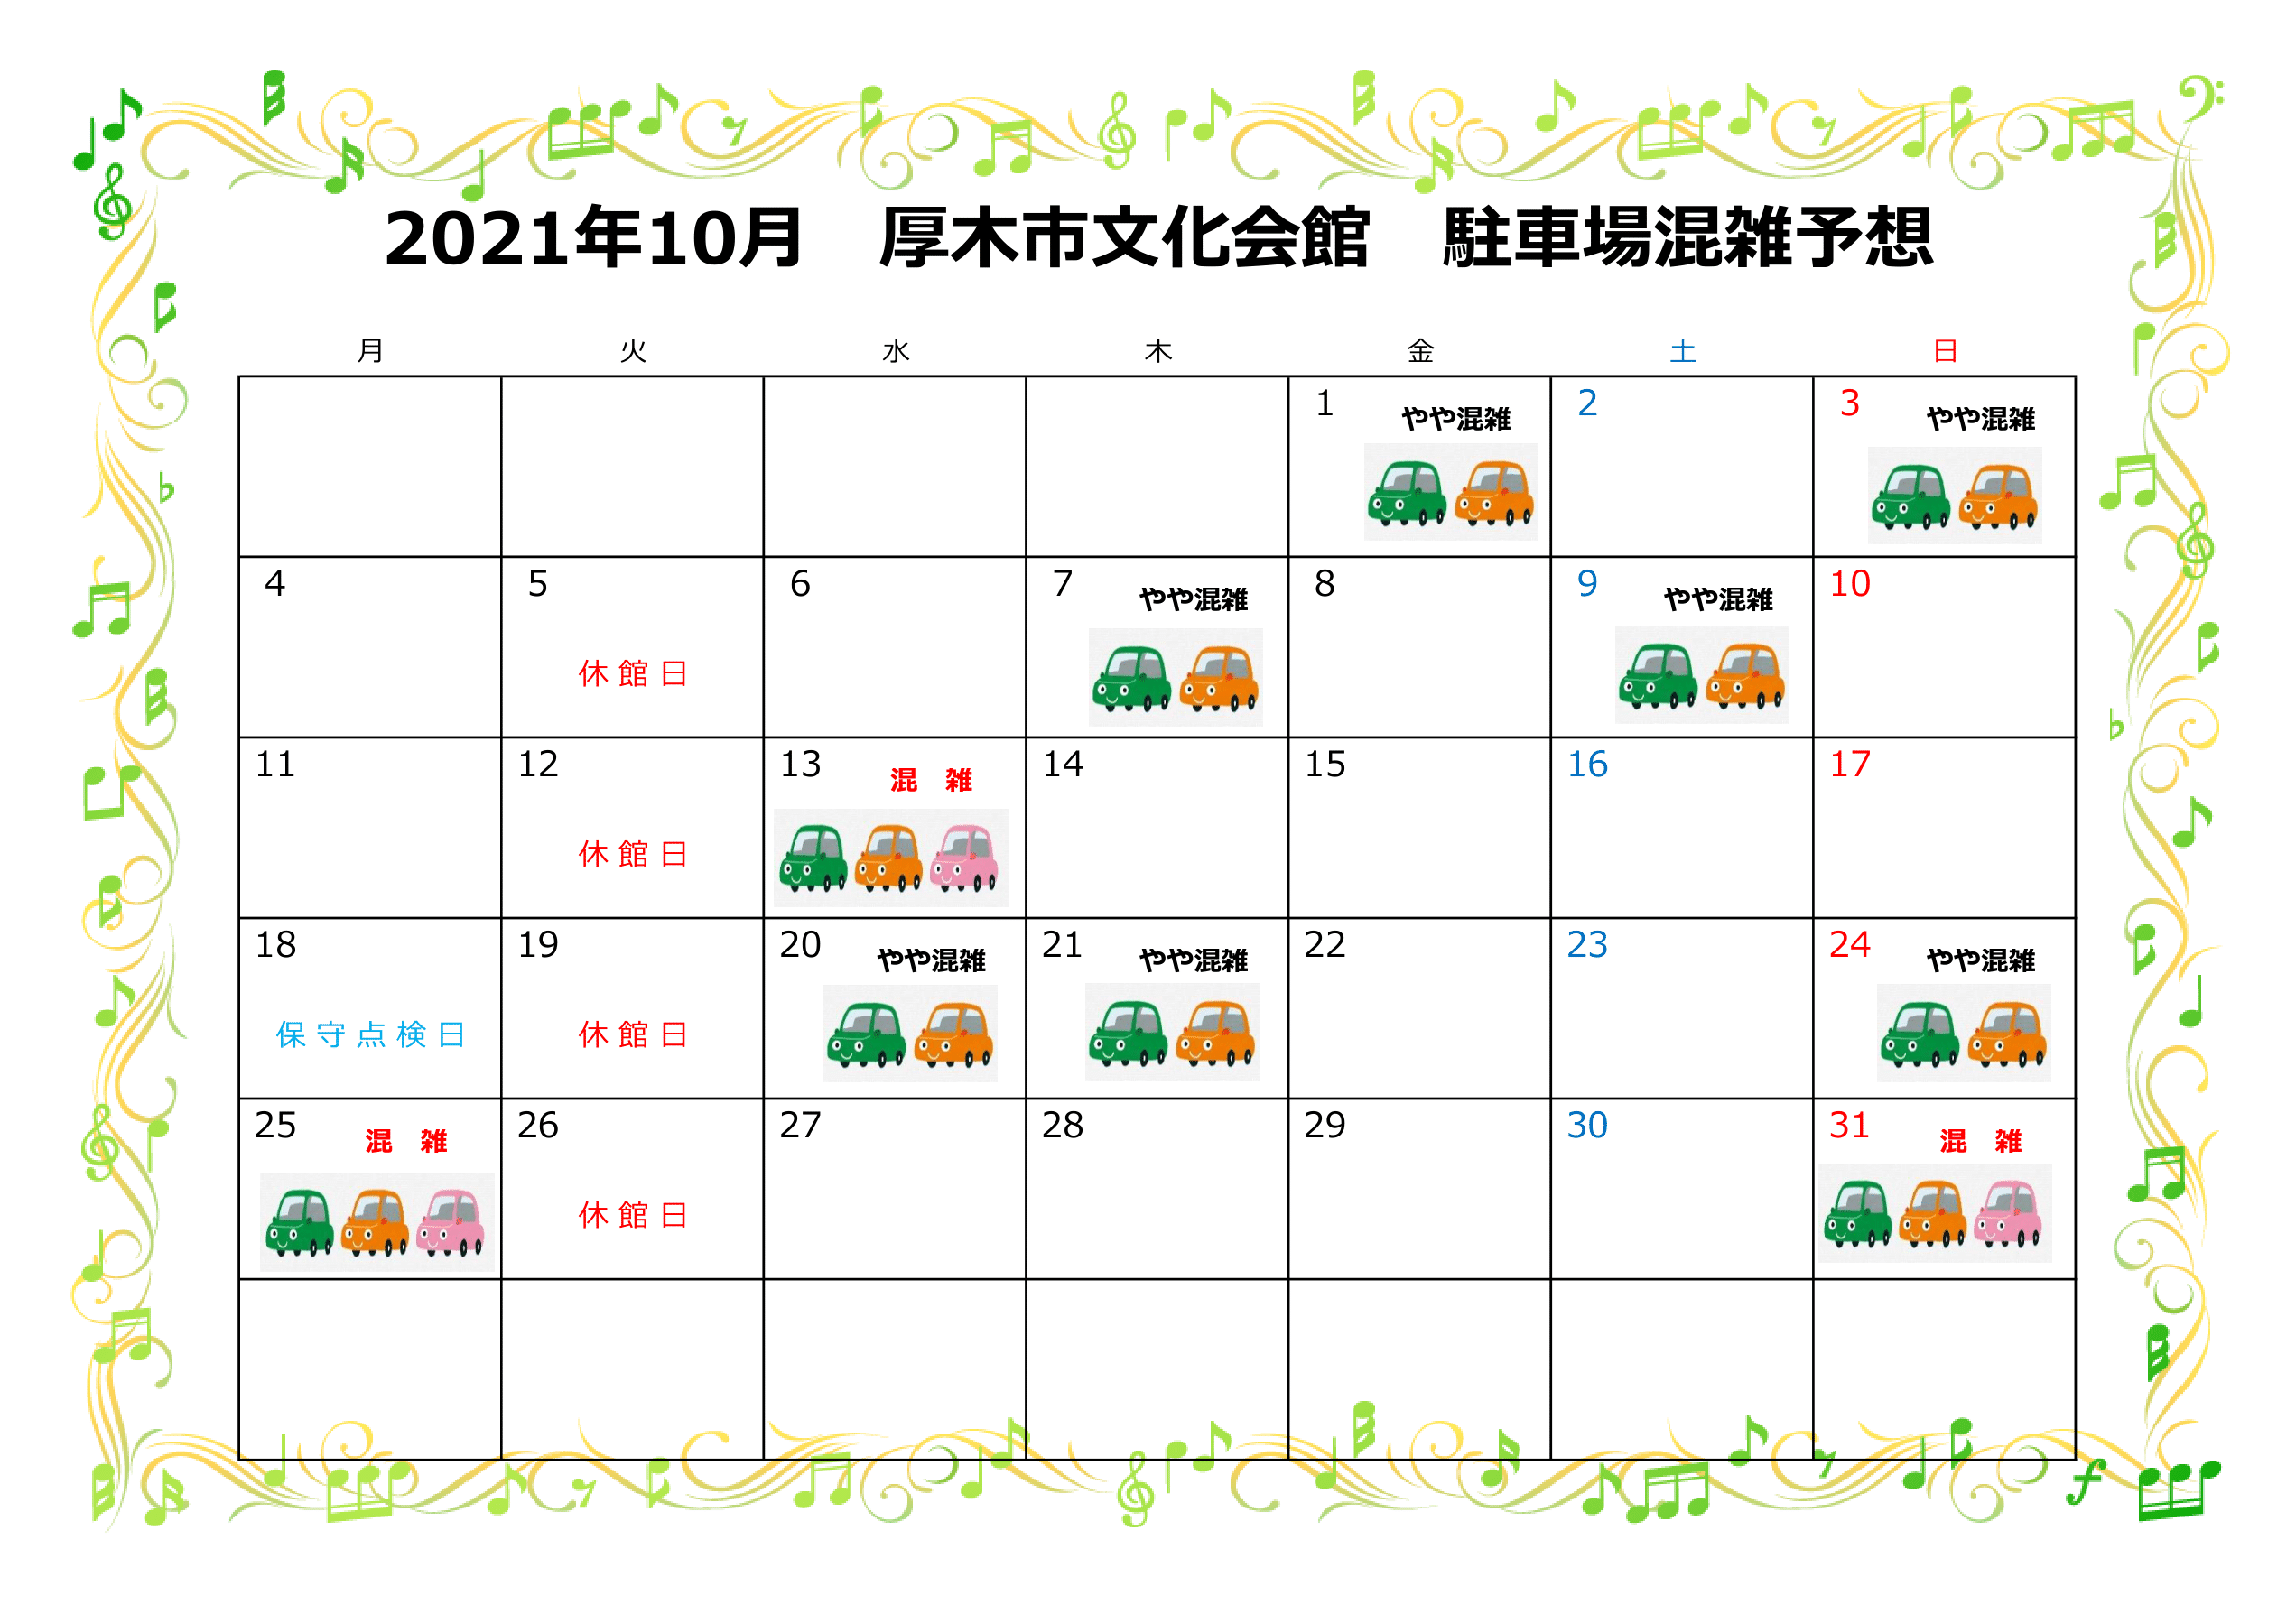 https://atsugi-bunka.jp/topics/img/2021.10-1-1.png